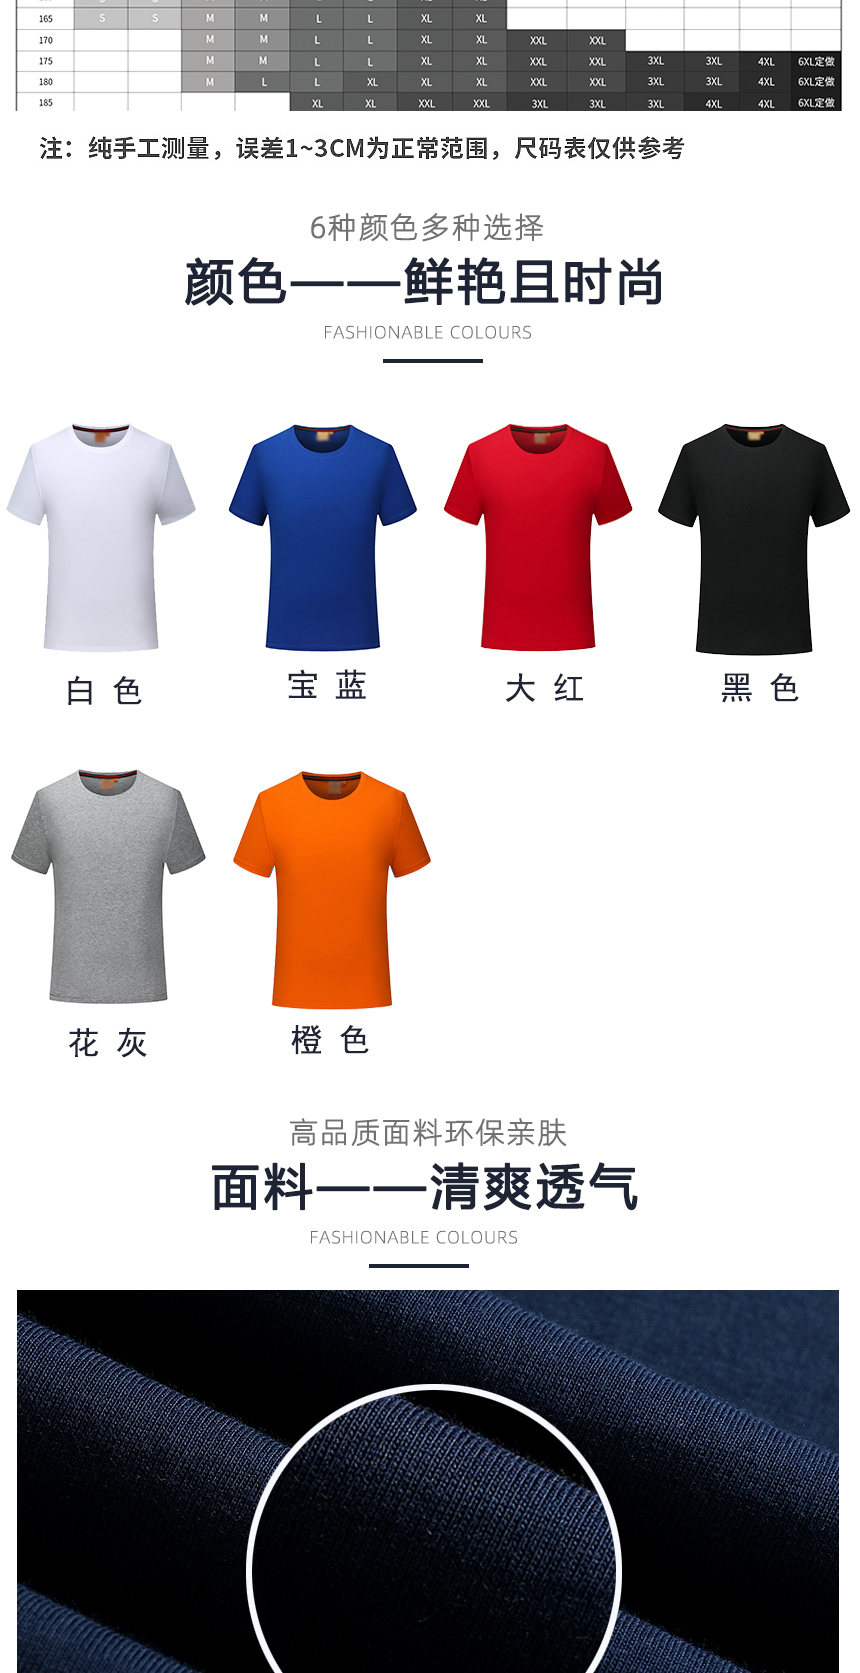 polo衫同款不同颜色款式展示，t恤精选优质面料